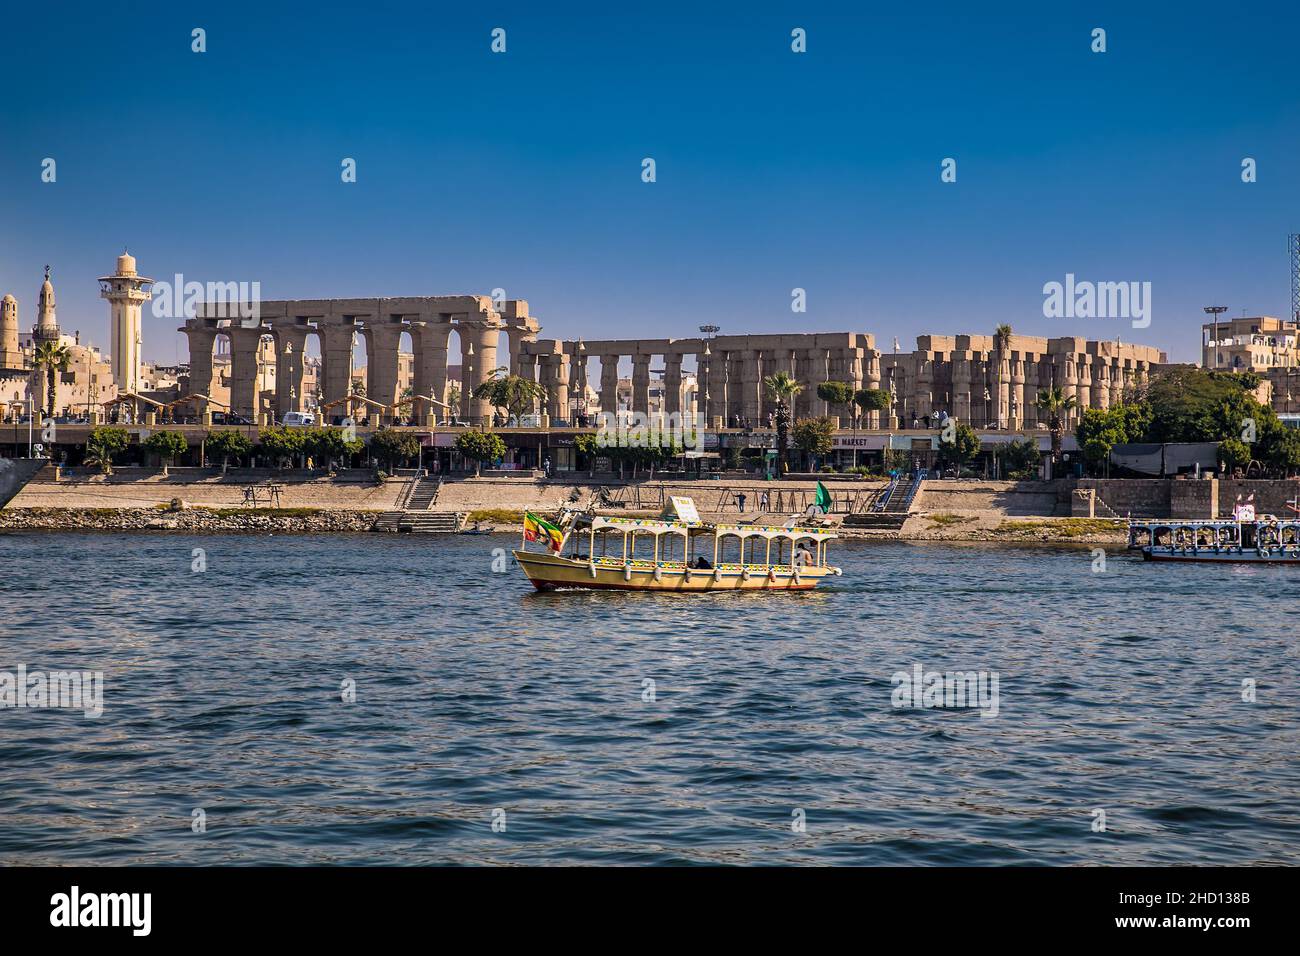 Luxor, Ägypten - Jan 28, 2020:die touristischen Boote auf dem Nil in Luxor, Ägypten Stockfoto